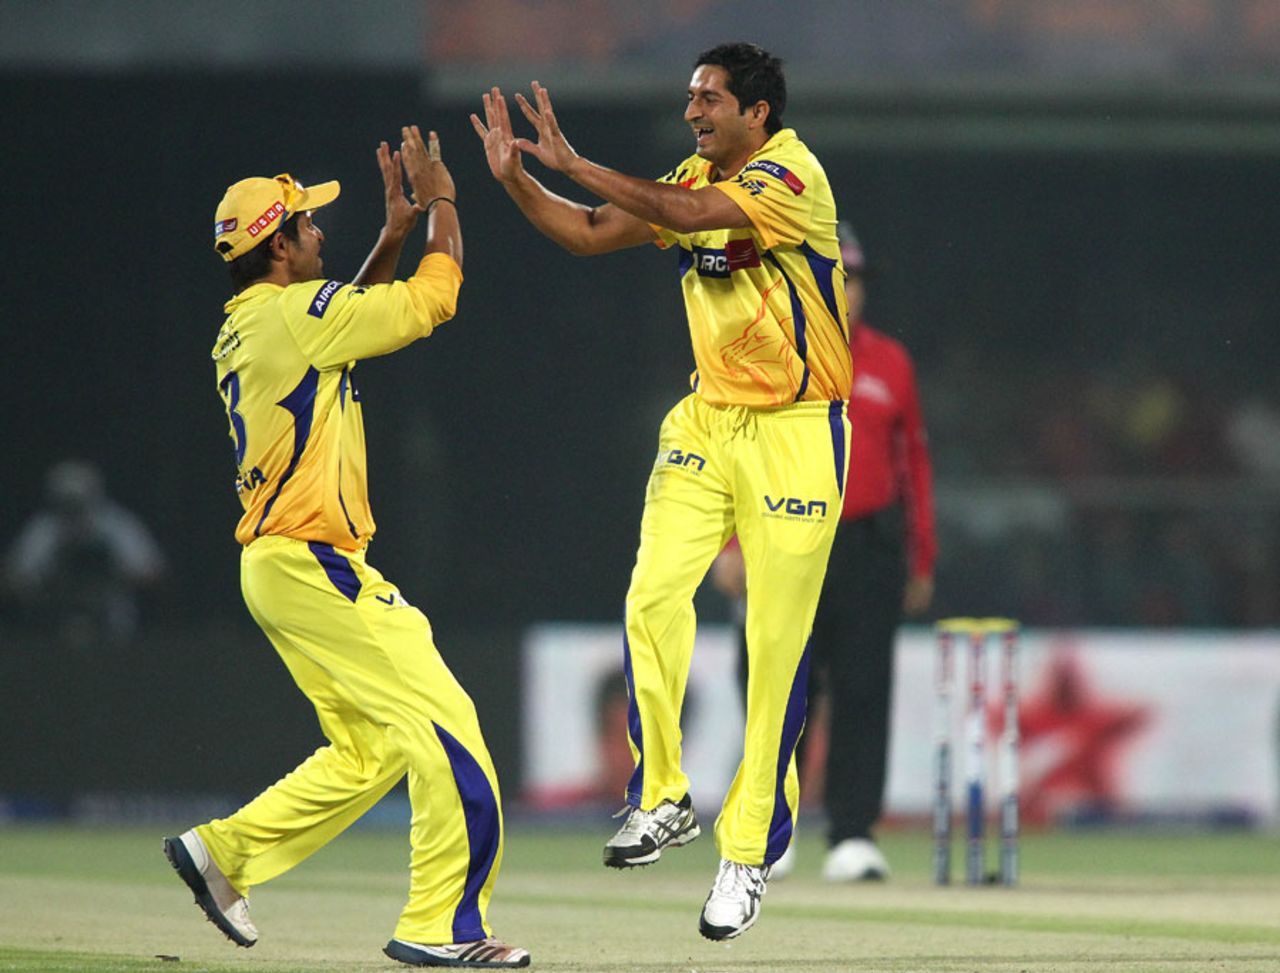 Suresh Raina and Mohit Sharma celebrate a wicket, Delhi Daredevils v Chennai Super Kings, IPL, Delhi, April 18, 2013